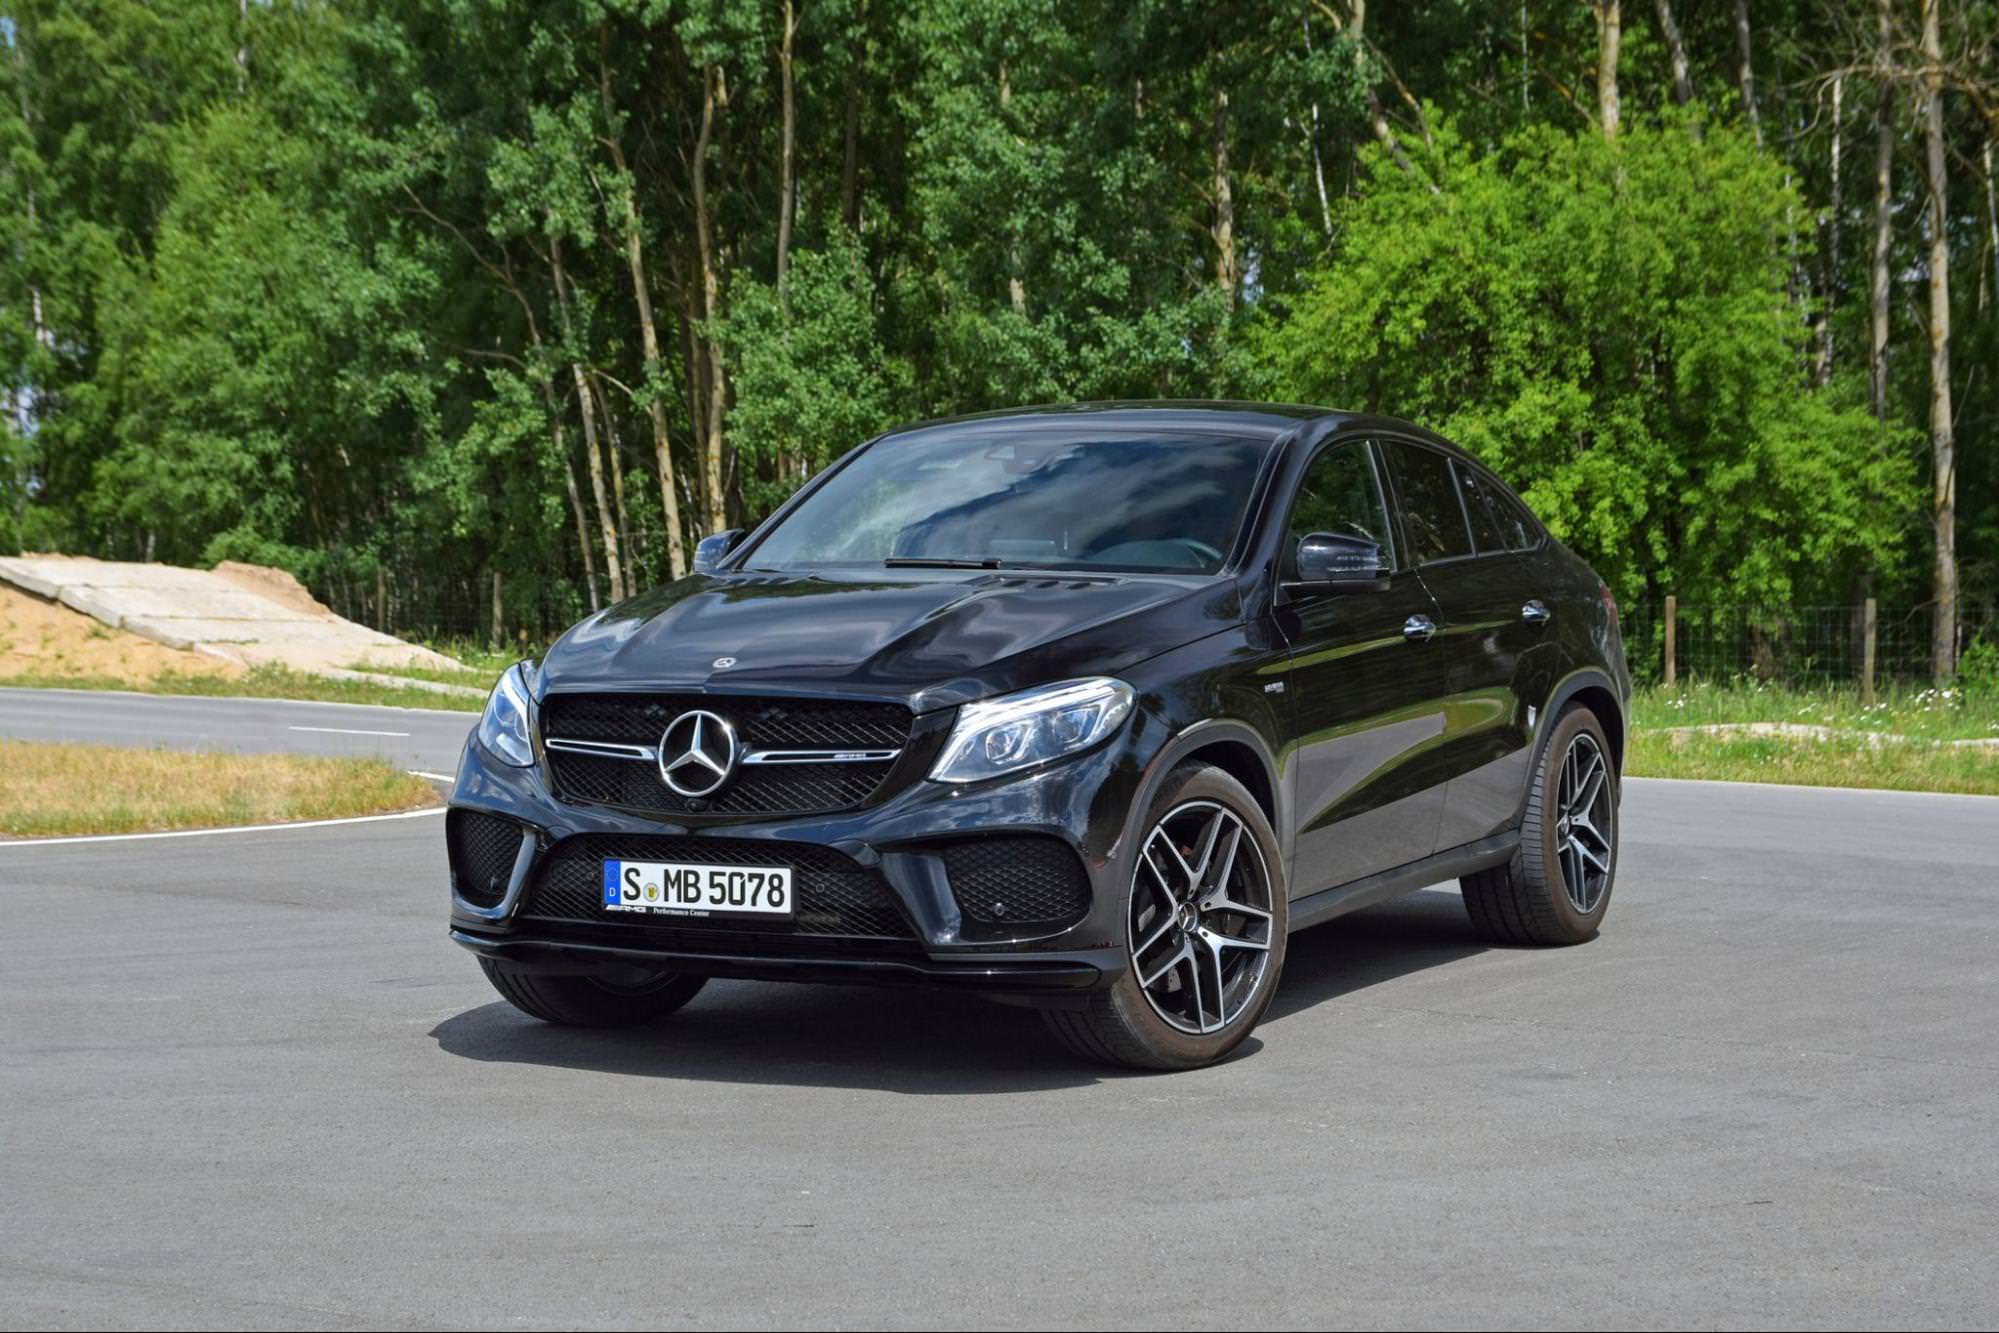 zwarte Mercedes gle geparkeerd op de weg